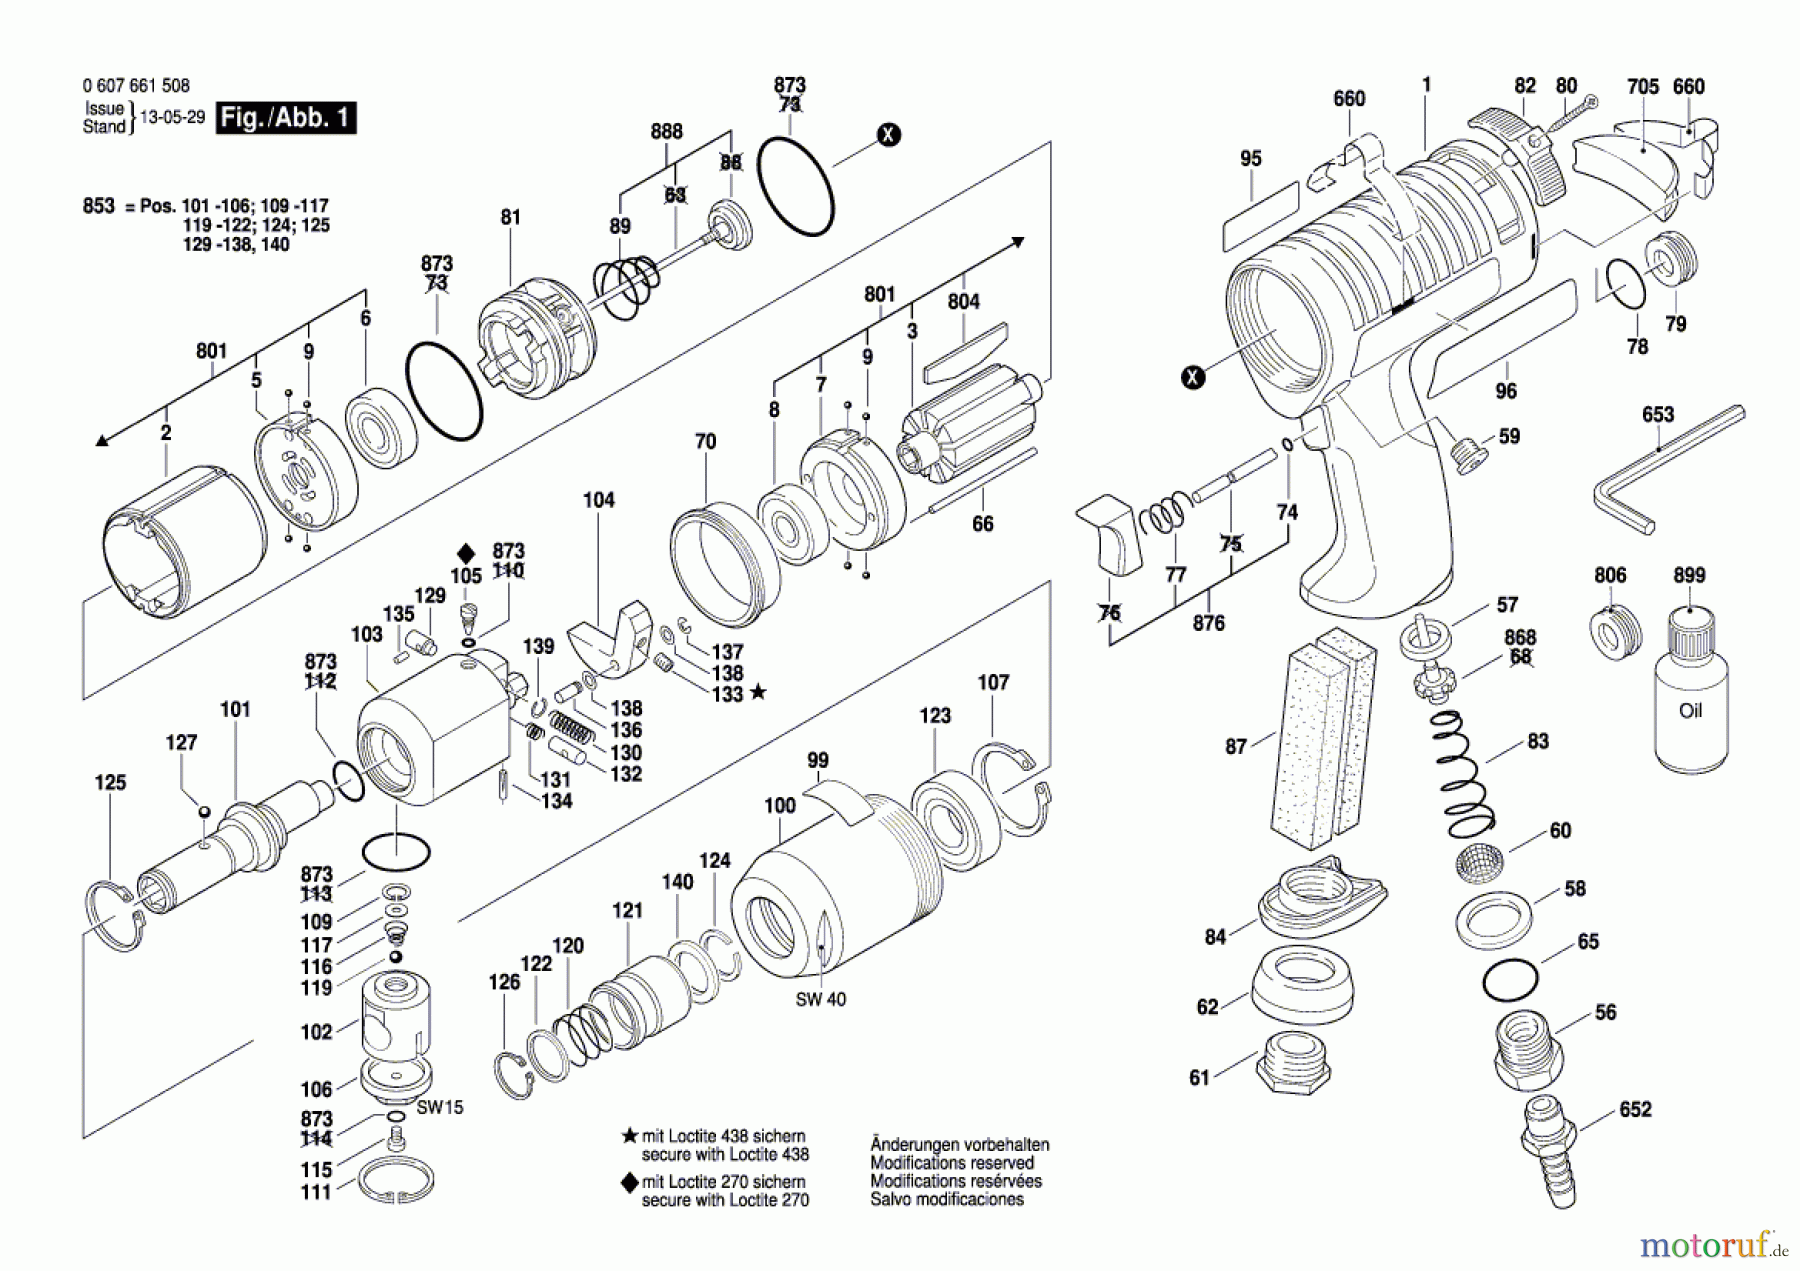  Bosch Werkzeug Impulsschrauber 300 WATT-SERIE Seite 1